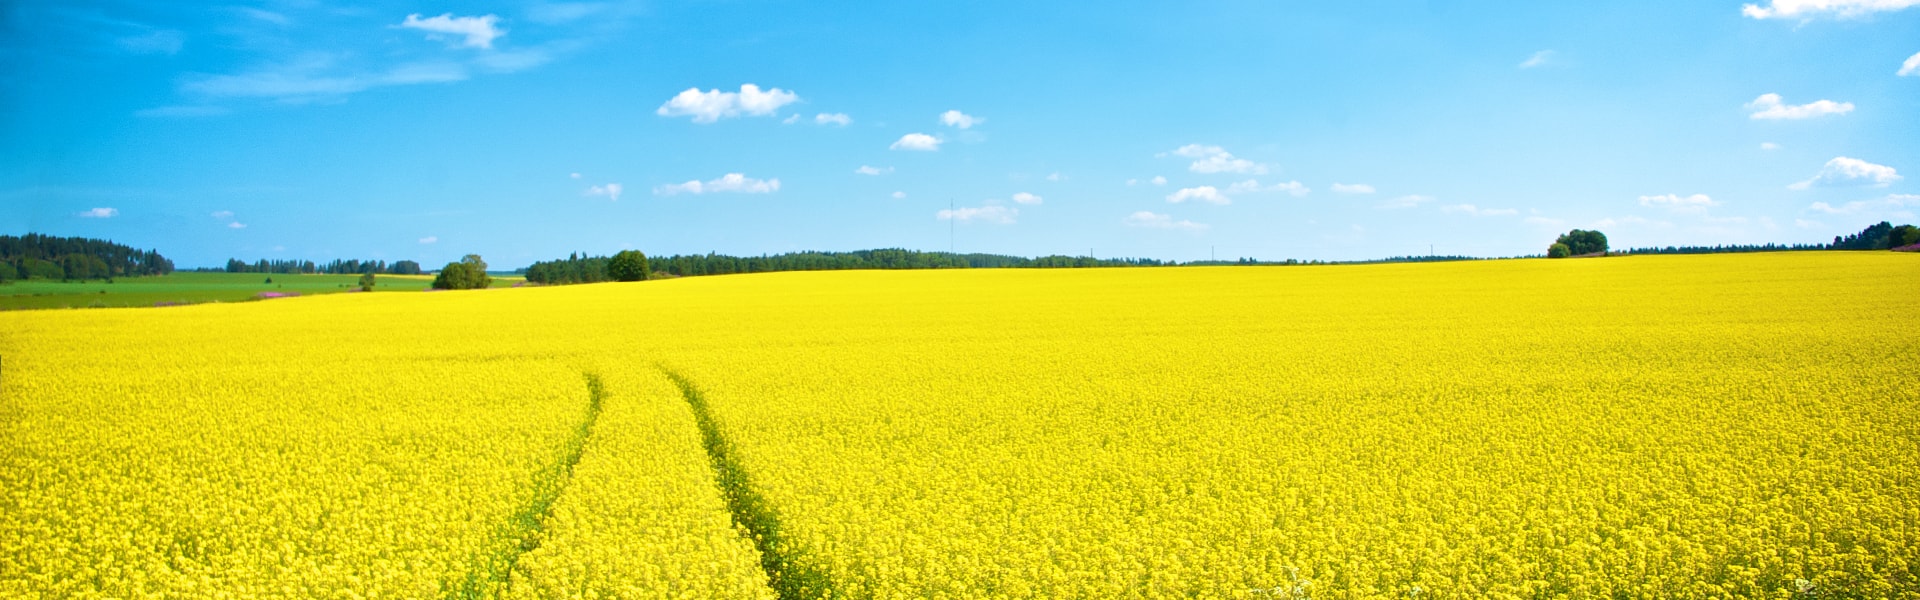 mustard-field